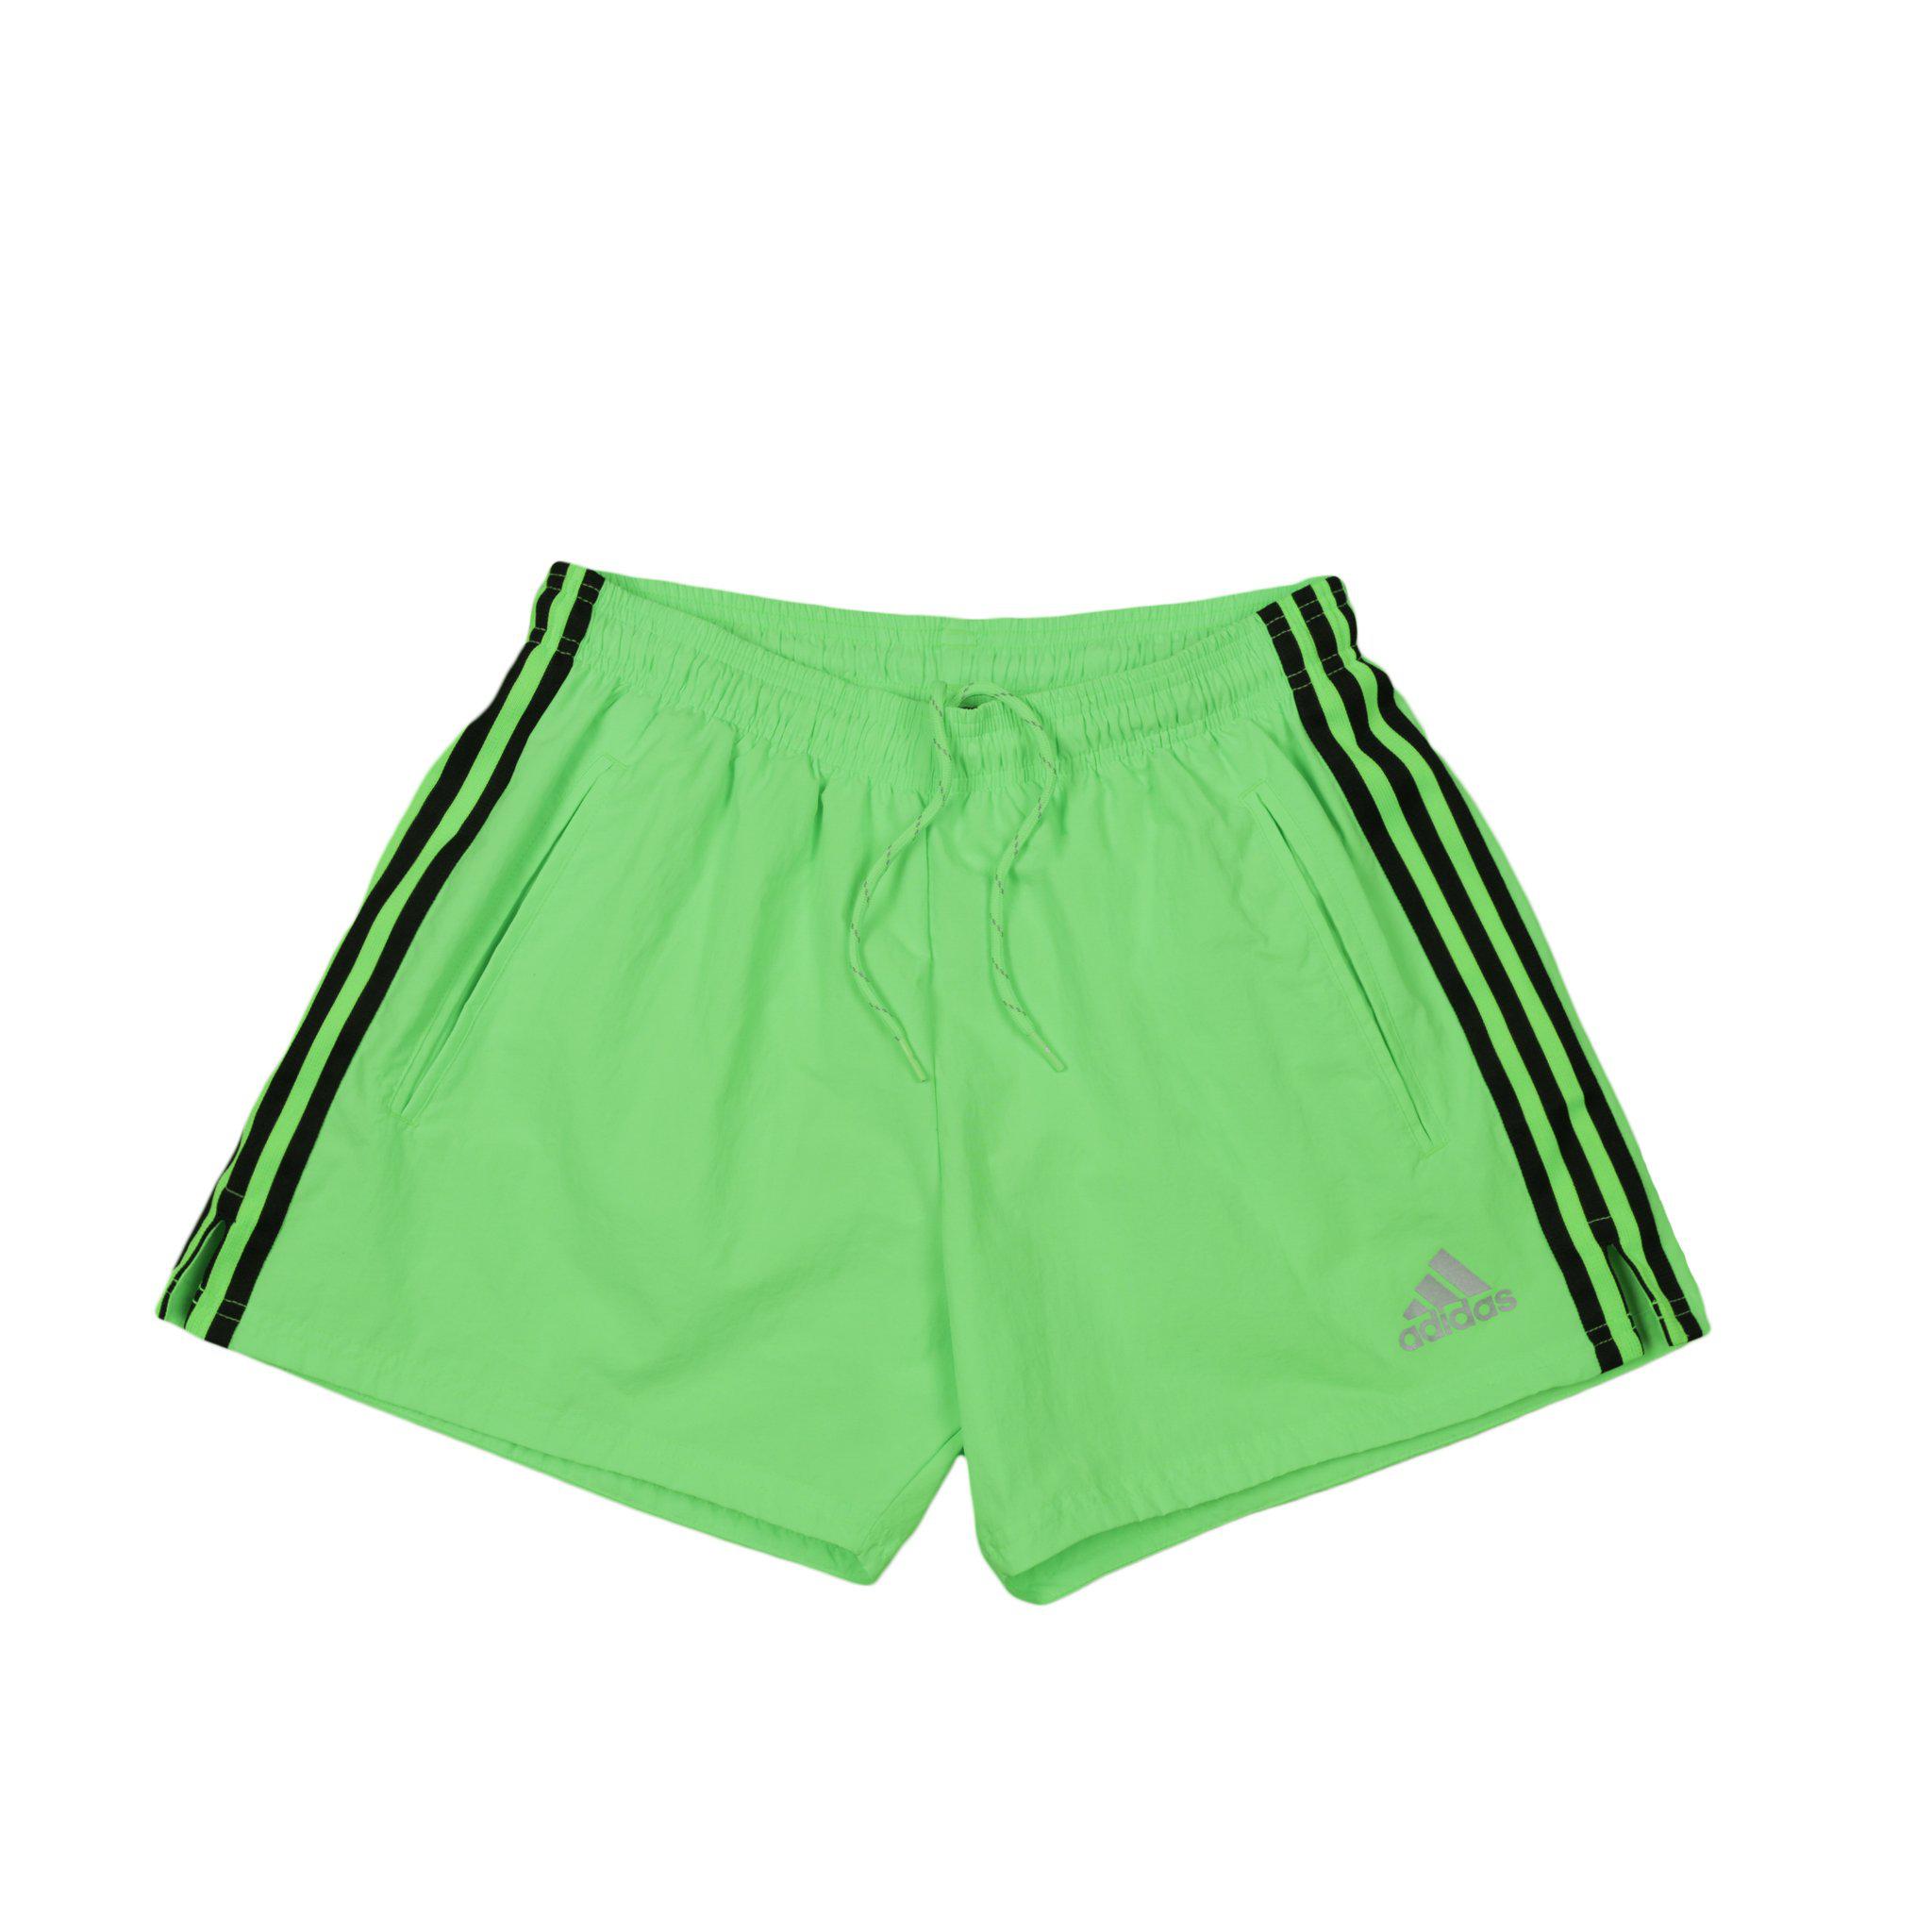 green adidas shorts - 61% OFF 